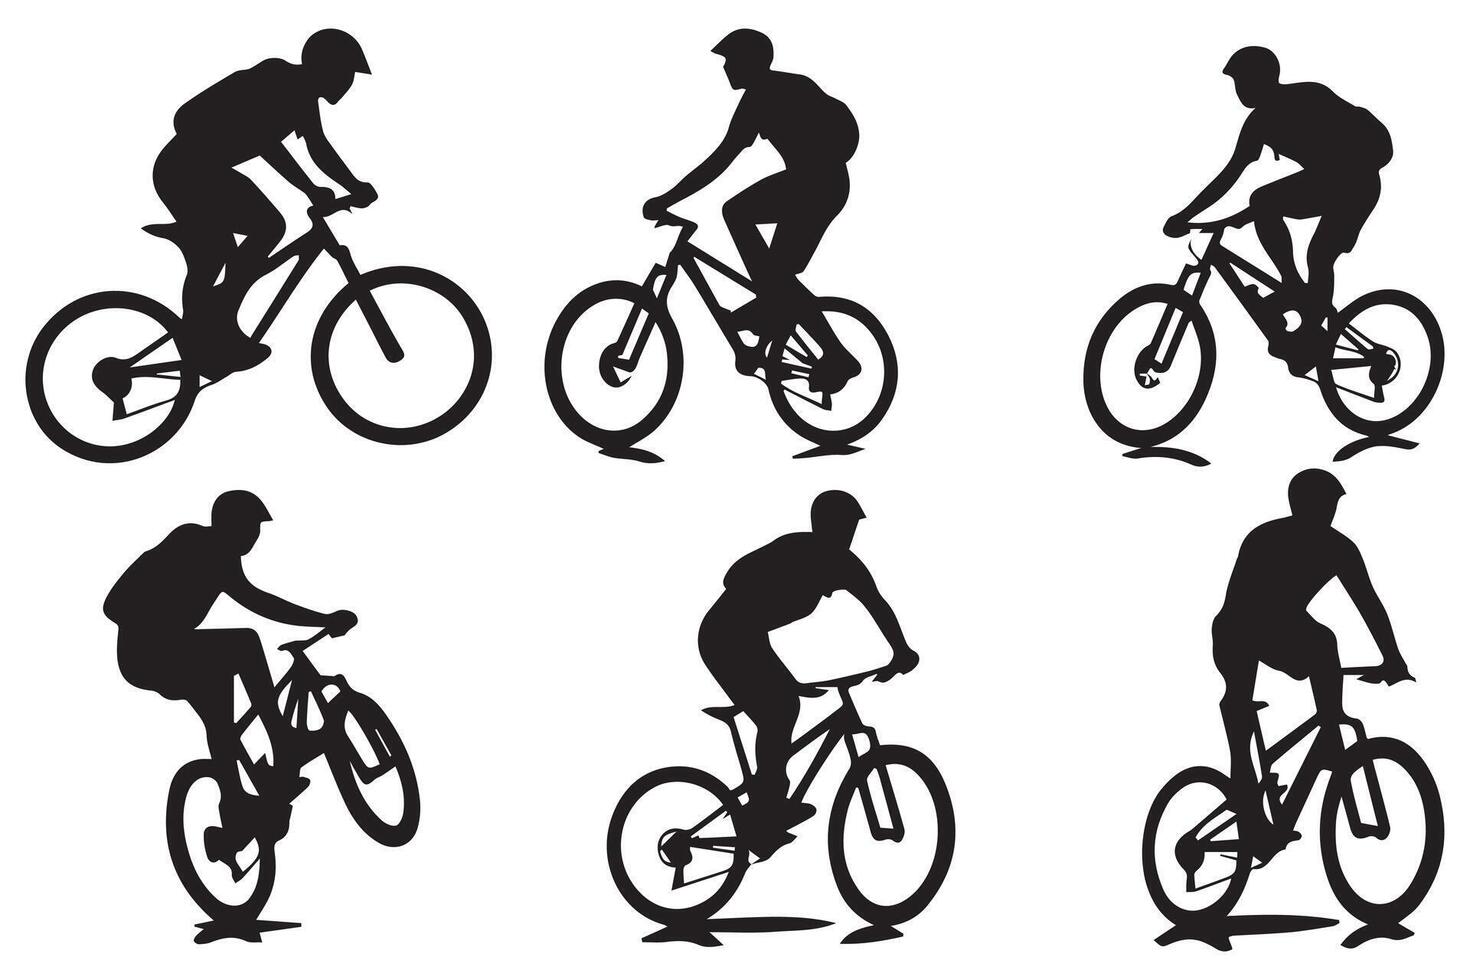 silueta de un ciclista saltando en un bicicleta vector